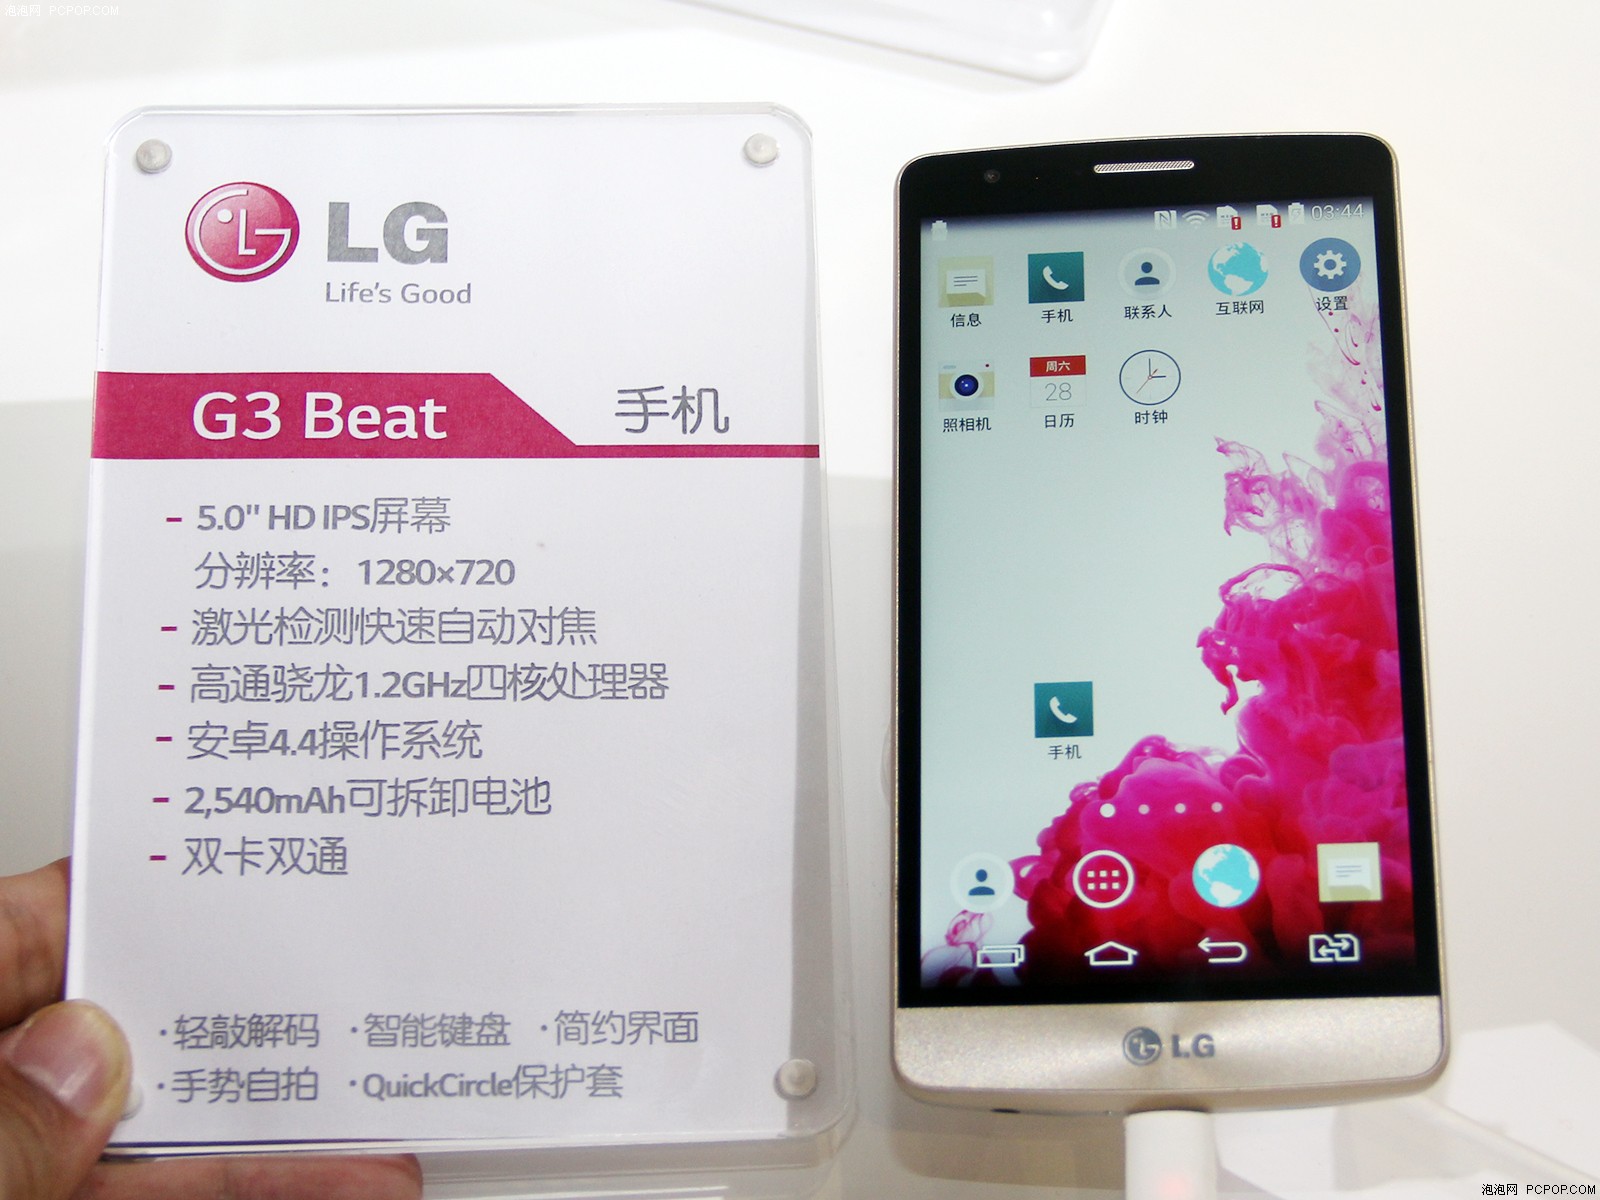 LG_G3_Beat_mini_cau_hinh.jpg